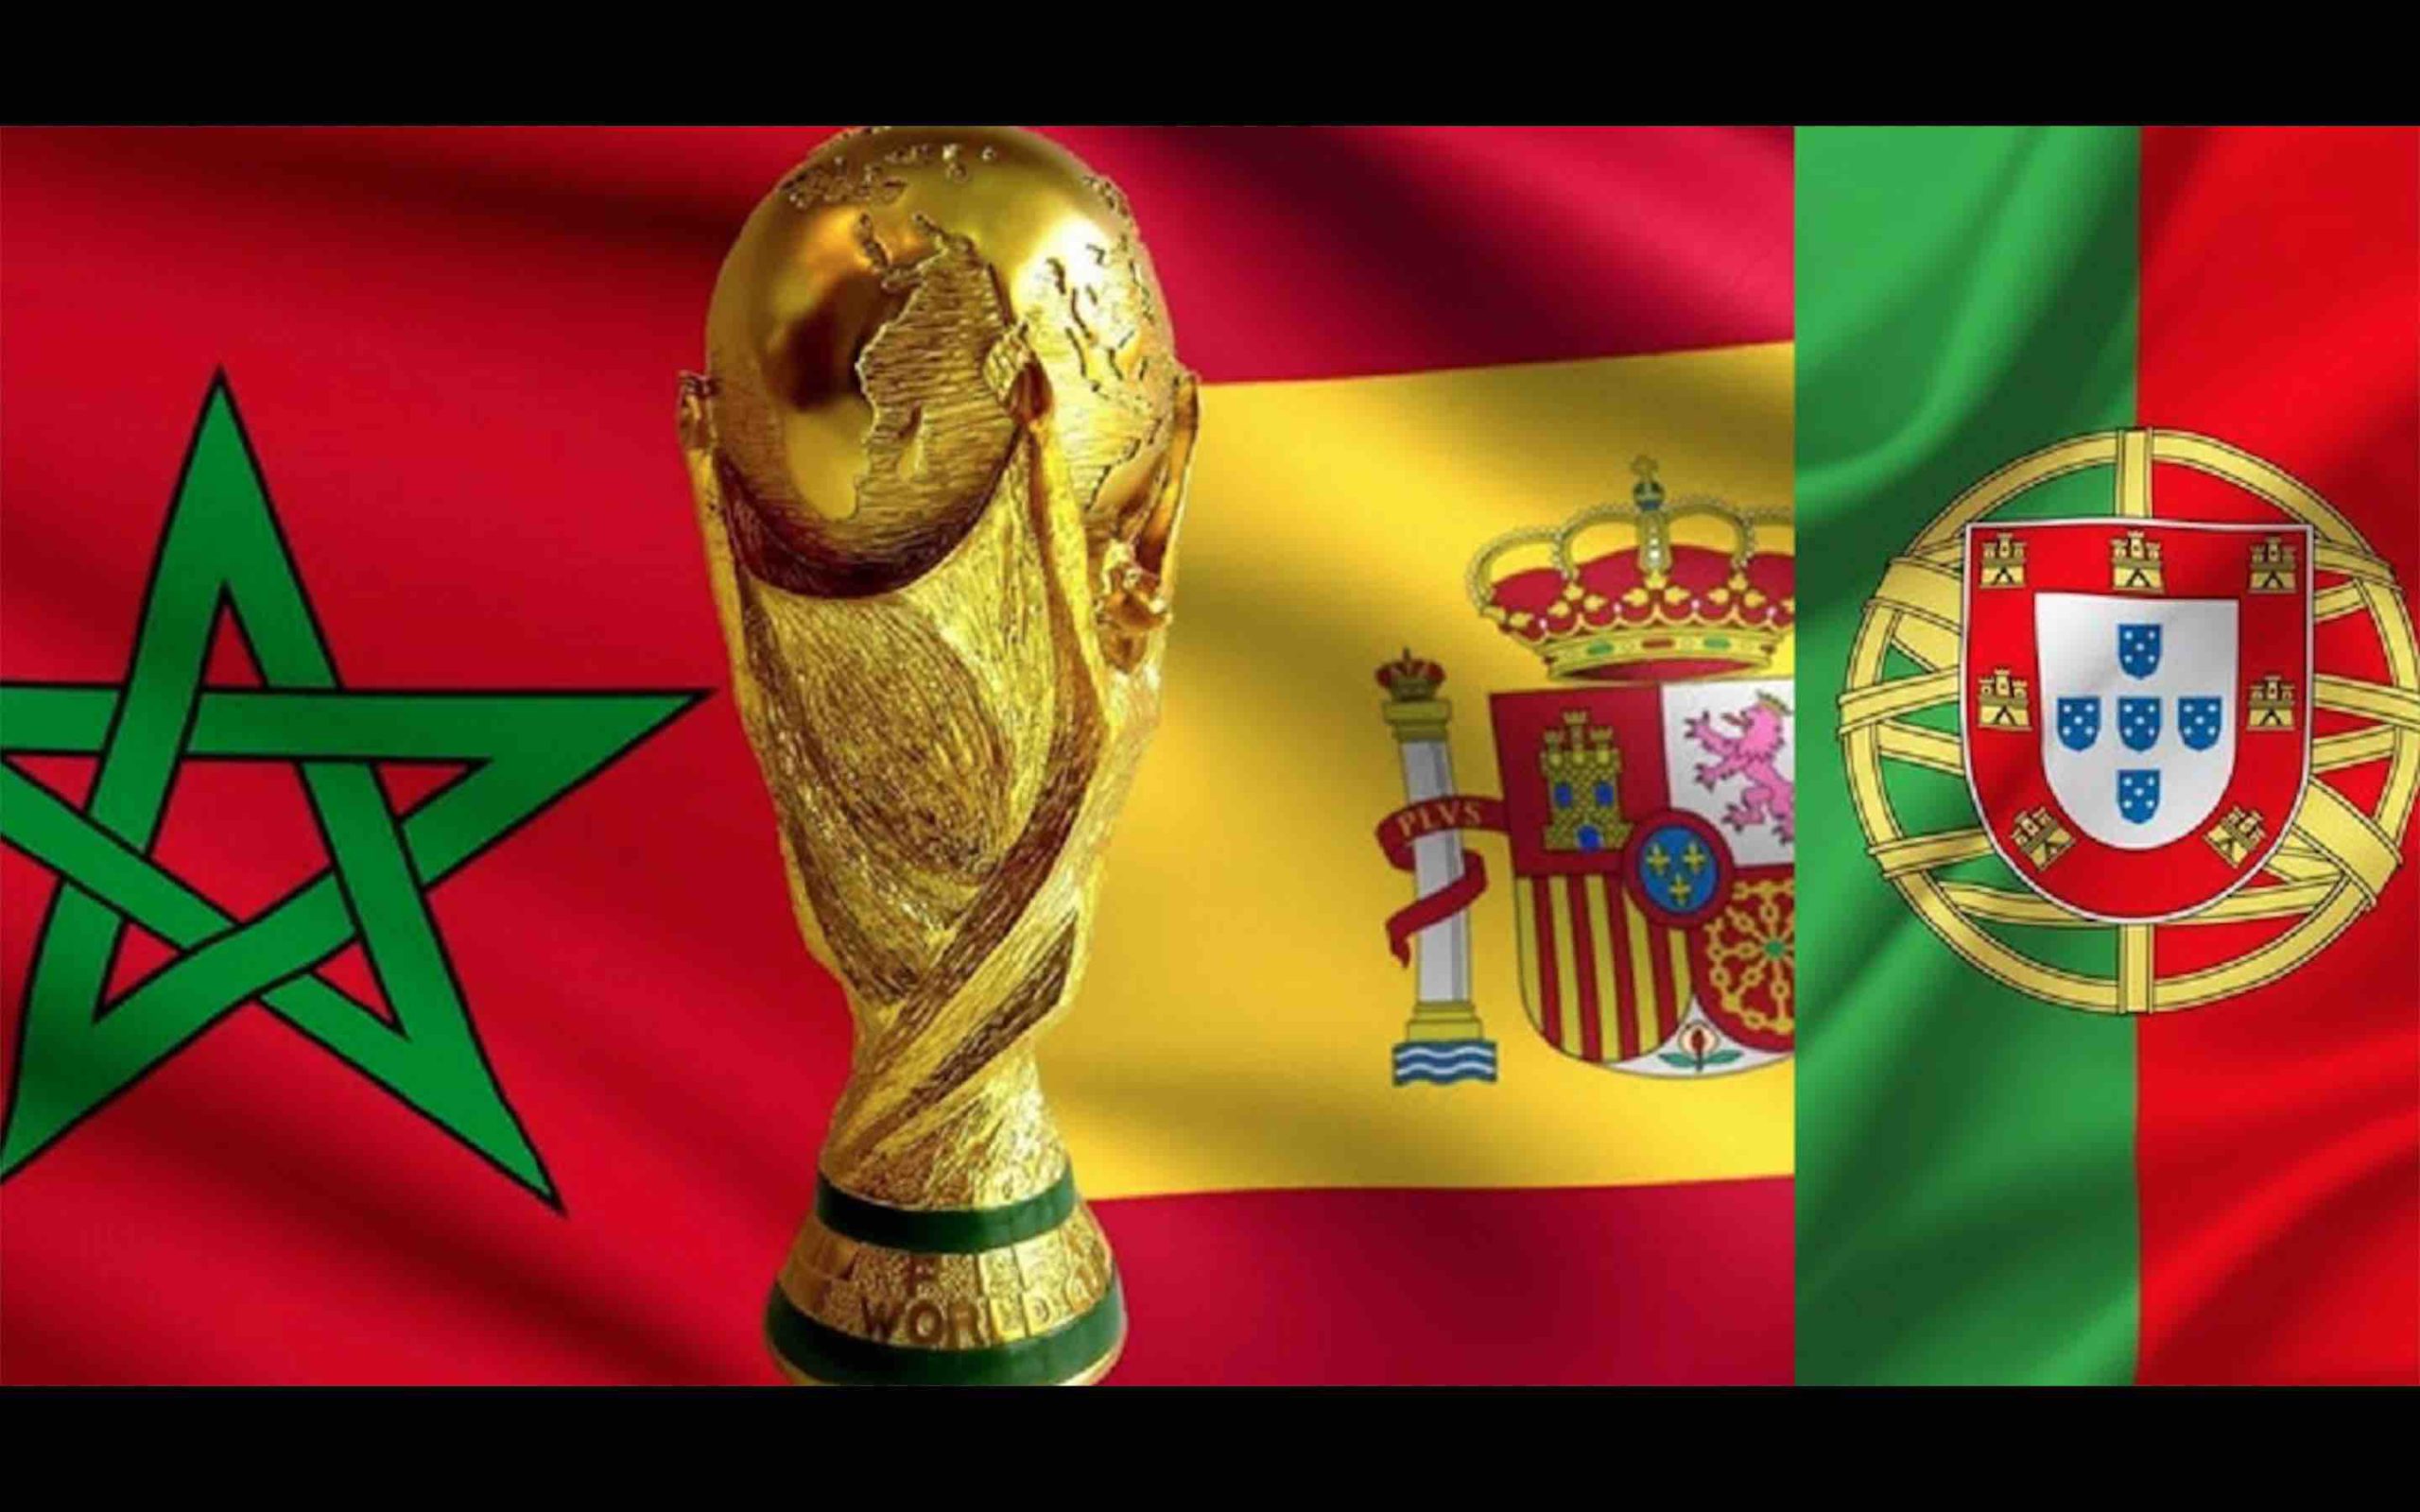 Officiel. Coupe du monde 2030 : Candidature conjointe du Maroc, de l’Espagne et du Portugal